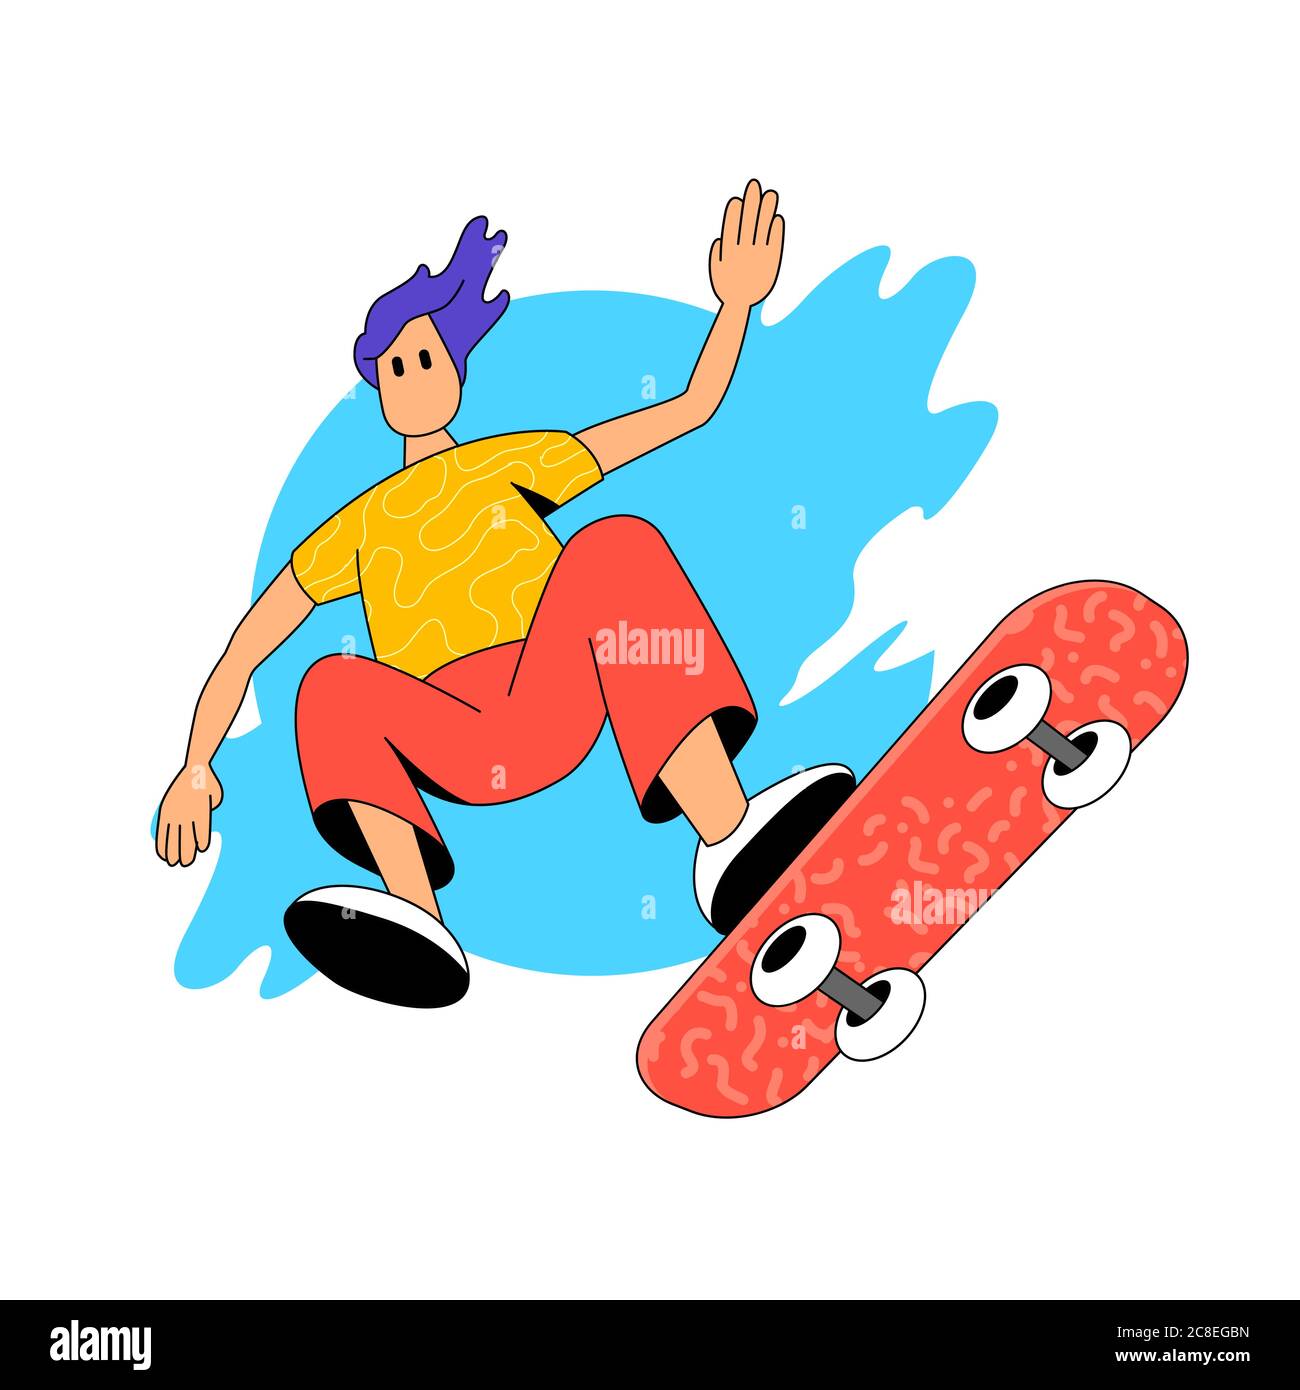 Ein junger Mensch, der auf seinem Skateboard in einem Skatepark springt. Personen Zeichen aktiv Vektor Illustration. Stock Vektor